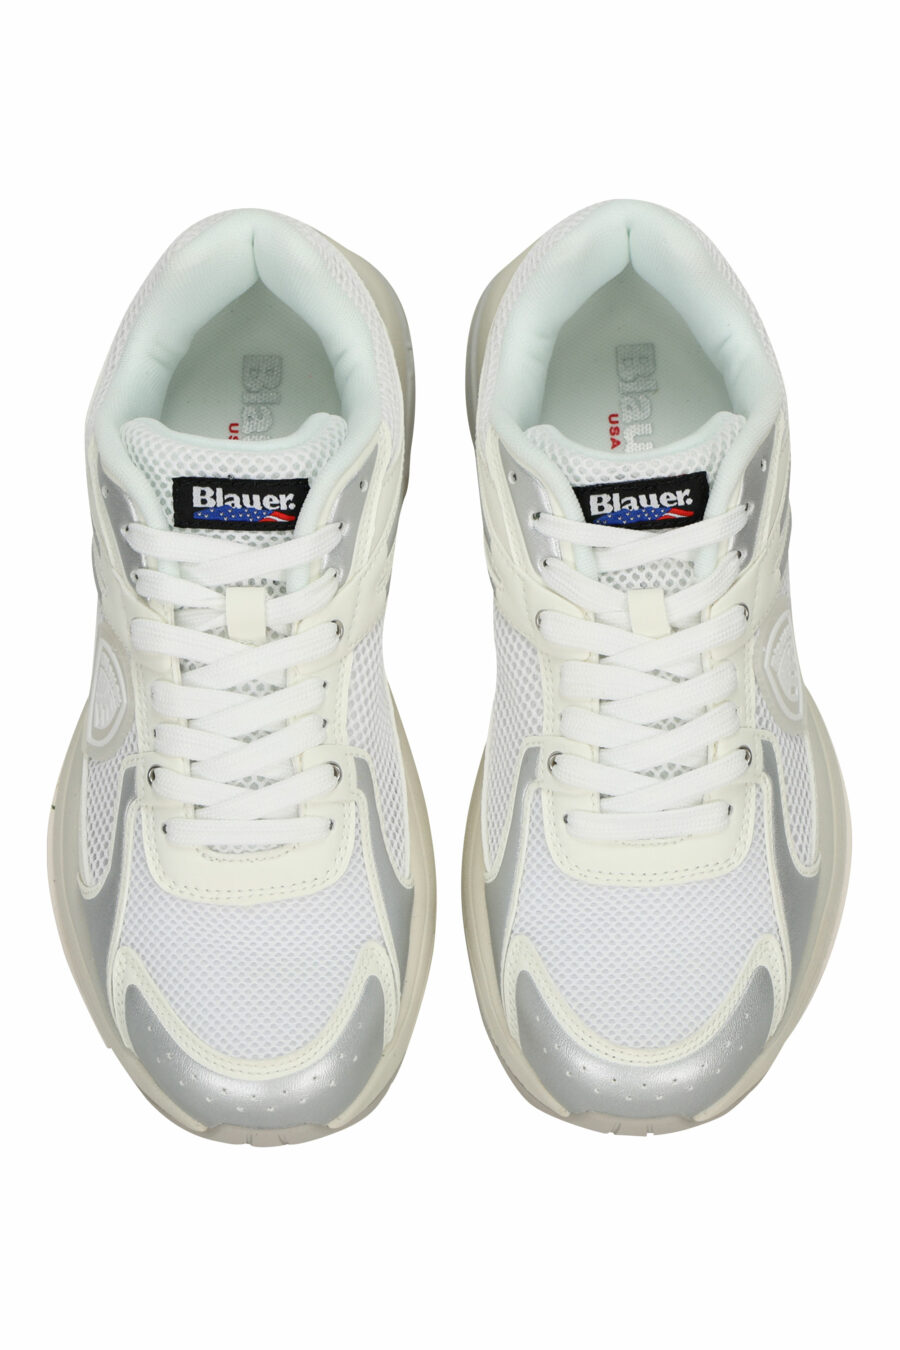 Chaussures blanches avec logo "aigle" argenté et bouclier blanc - 8058156543539 4